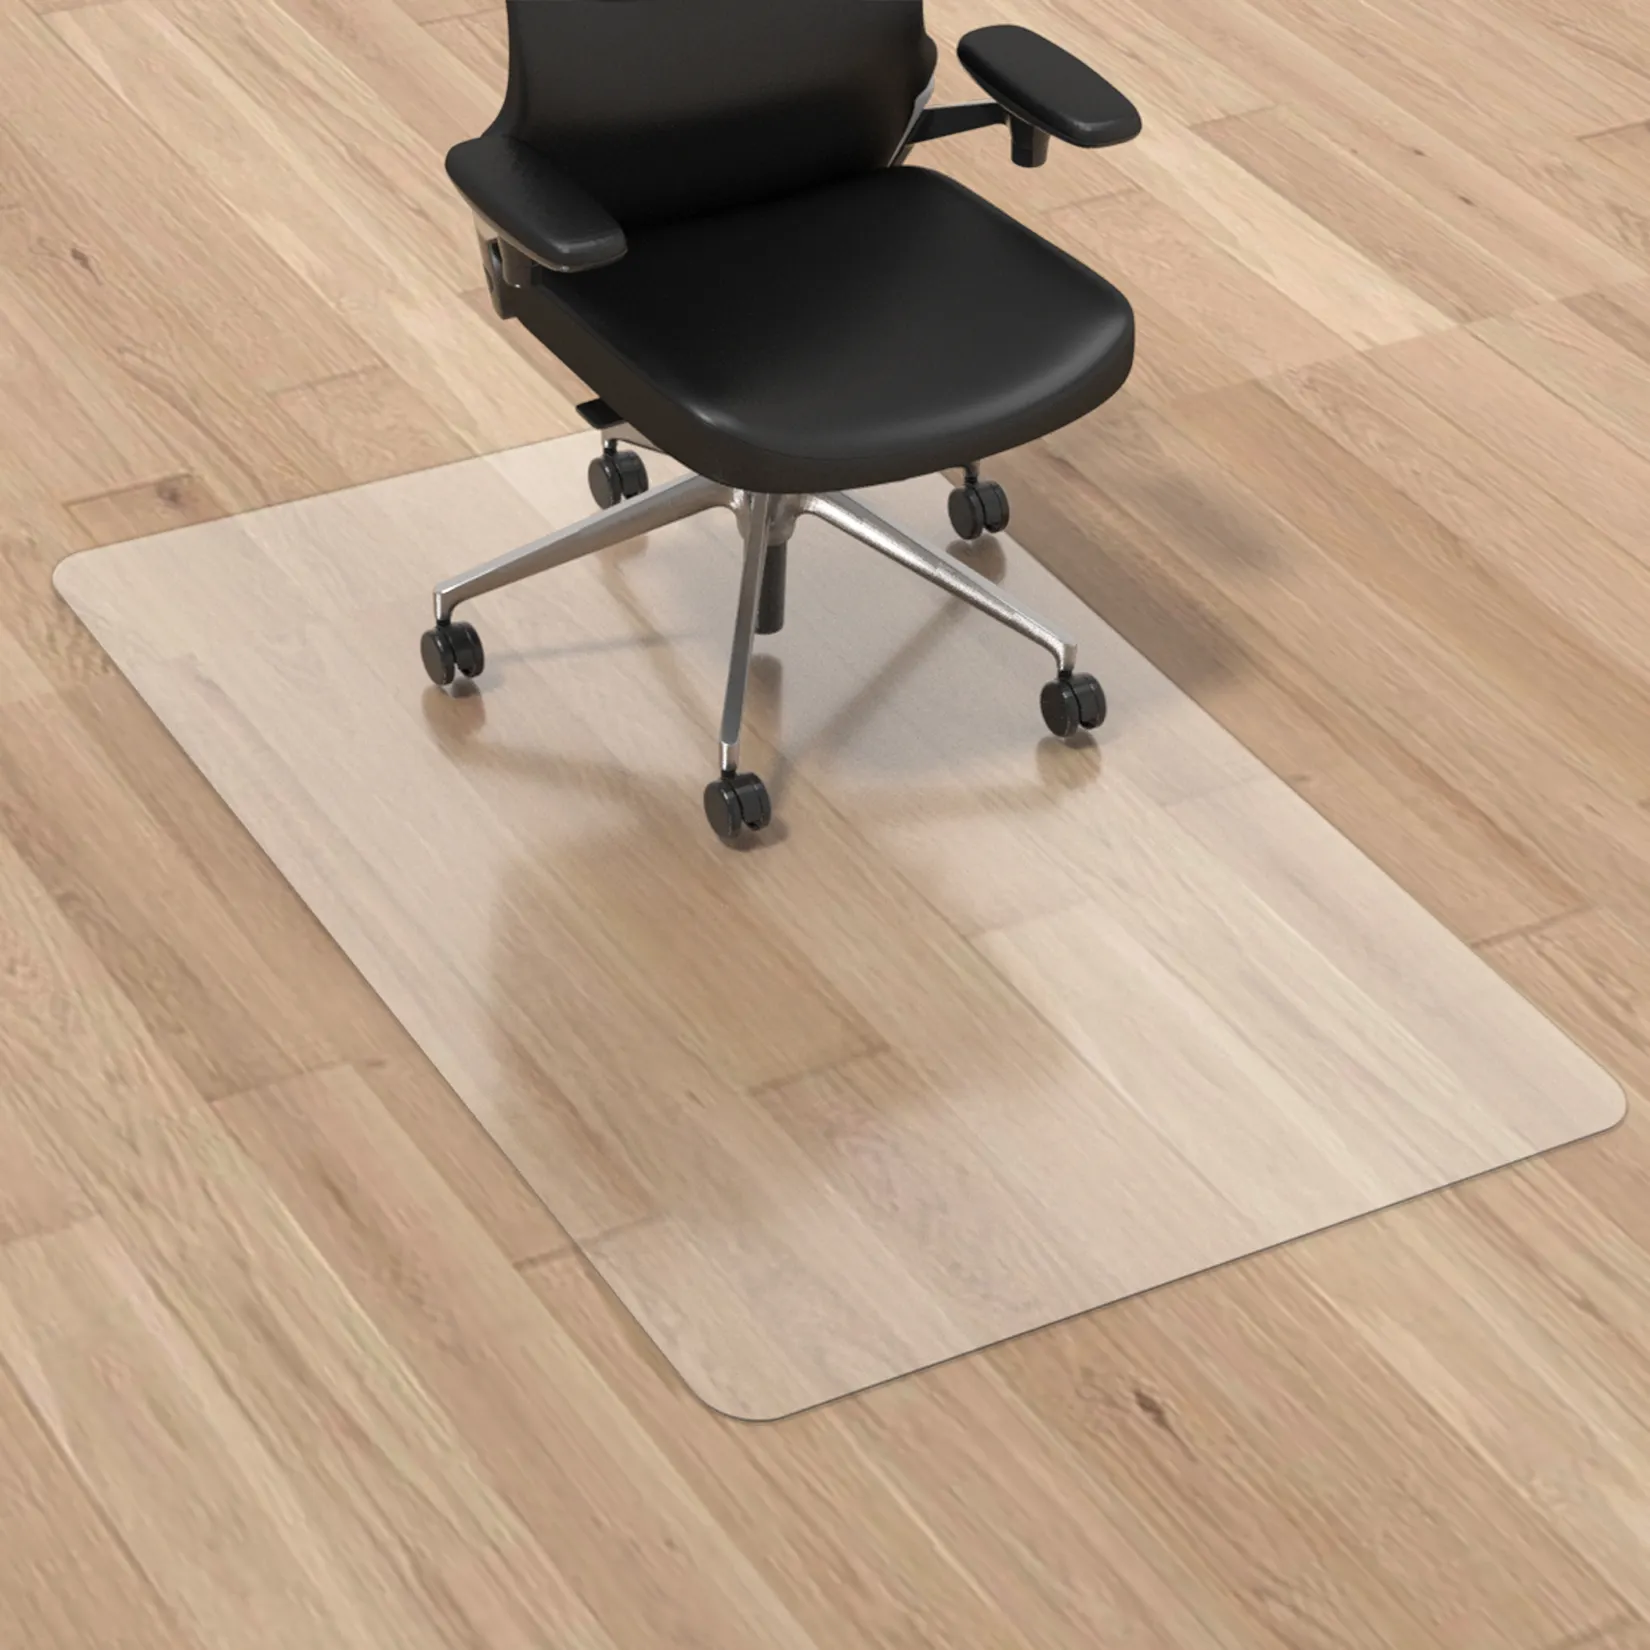 2023 personalizzato rettangolo impermeabile trasparente pavimento rigido tappetino per sedia in PVC ufficio casa tappetino protettivo tappetino per sedia ad alta rotazione